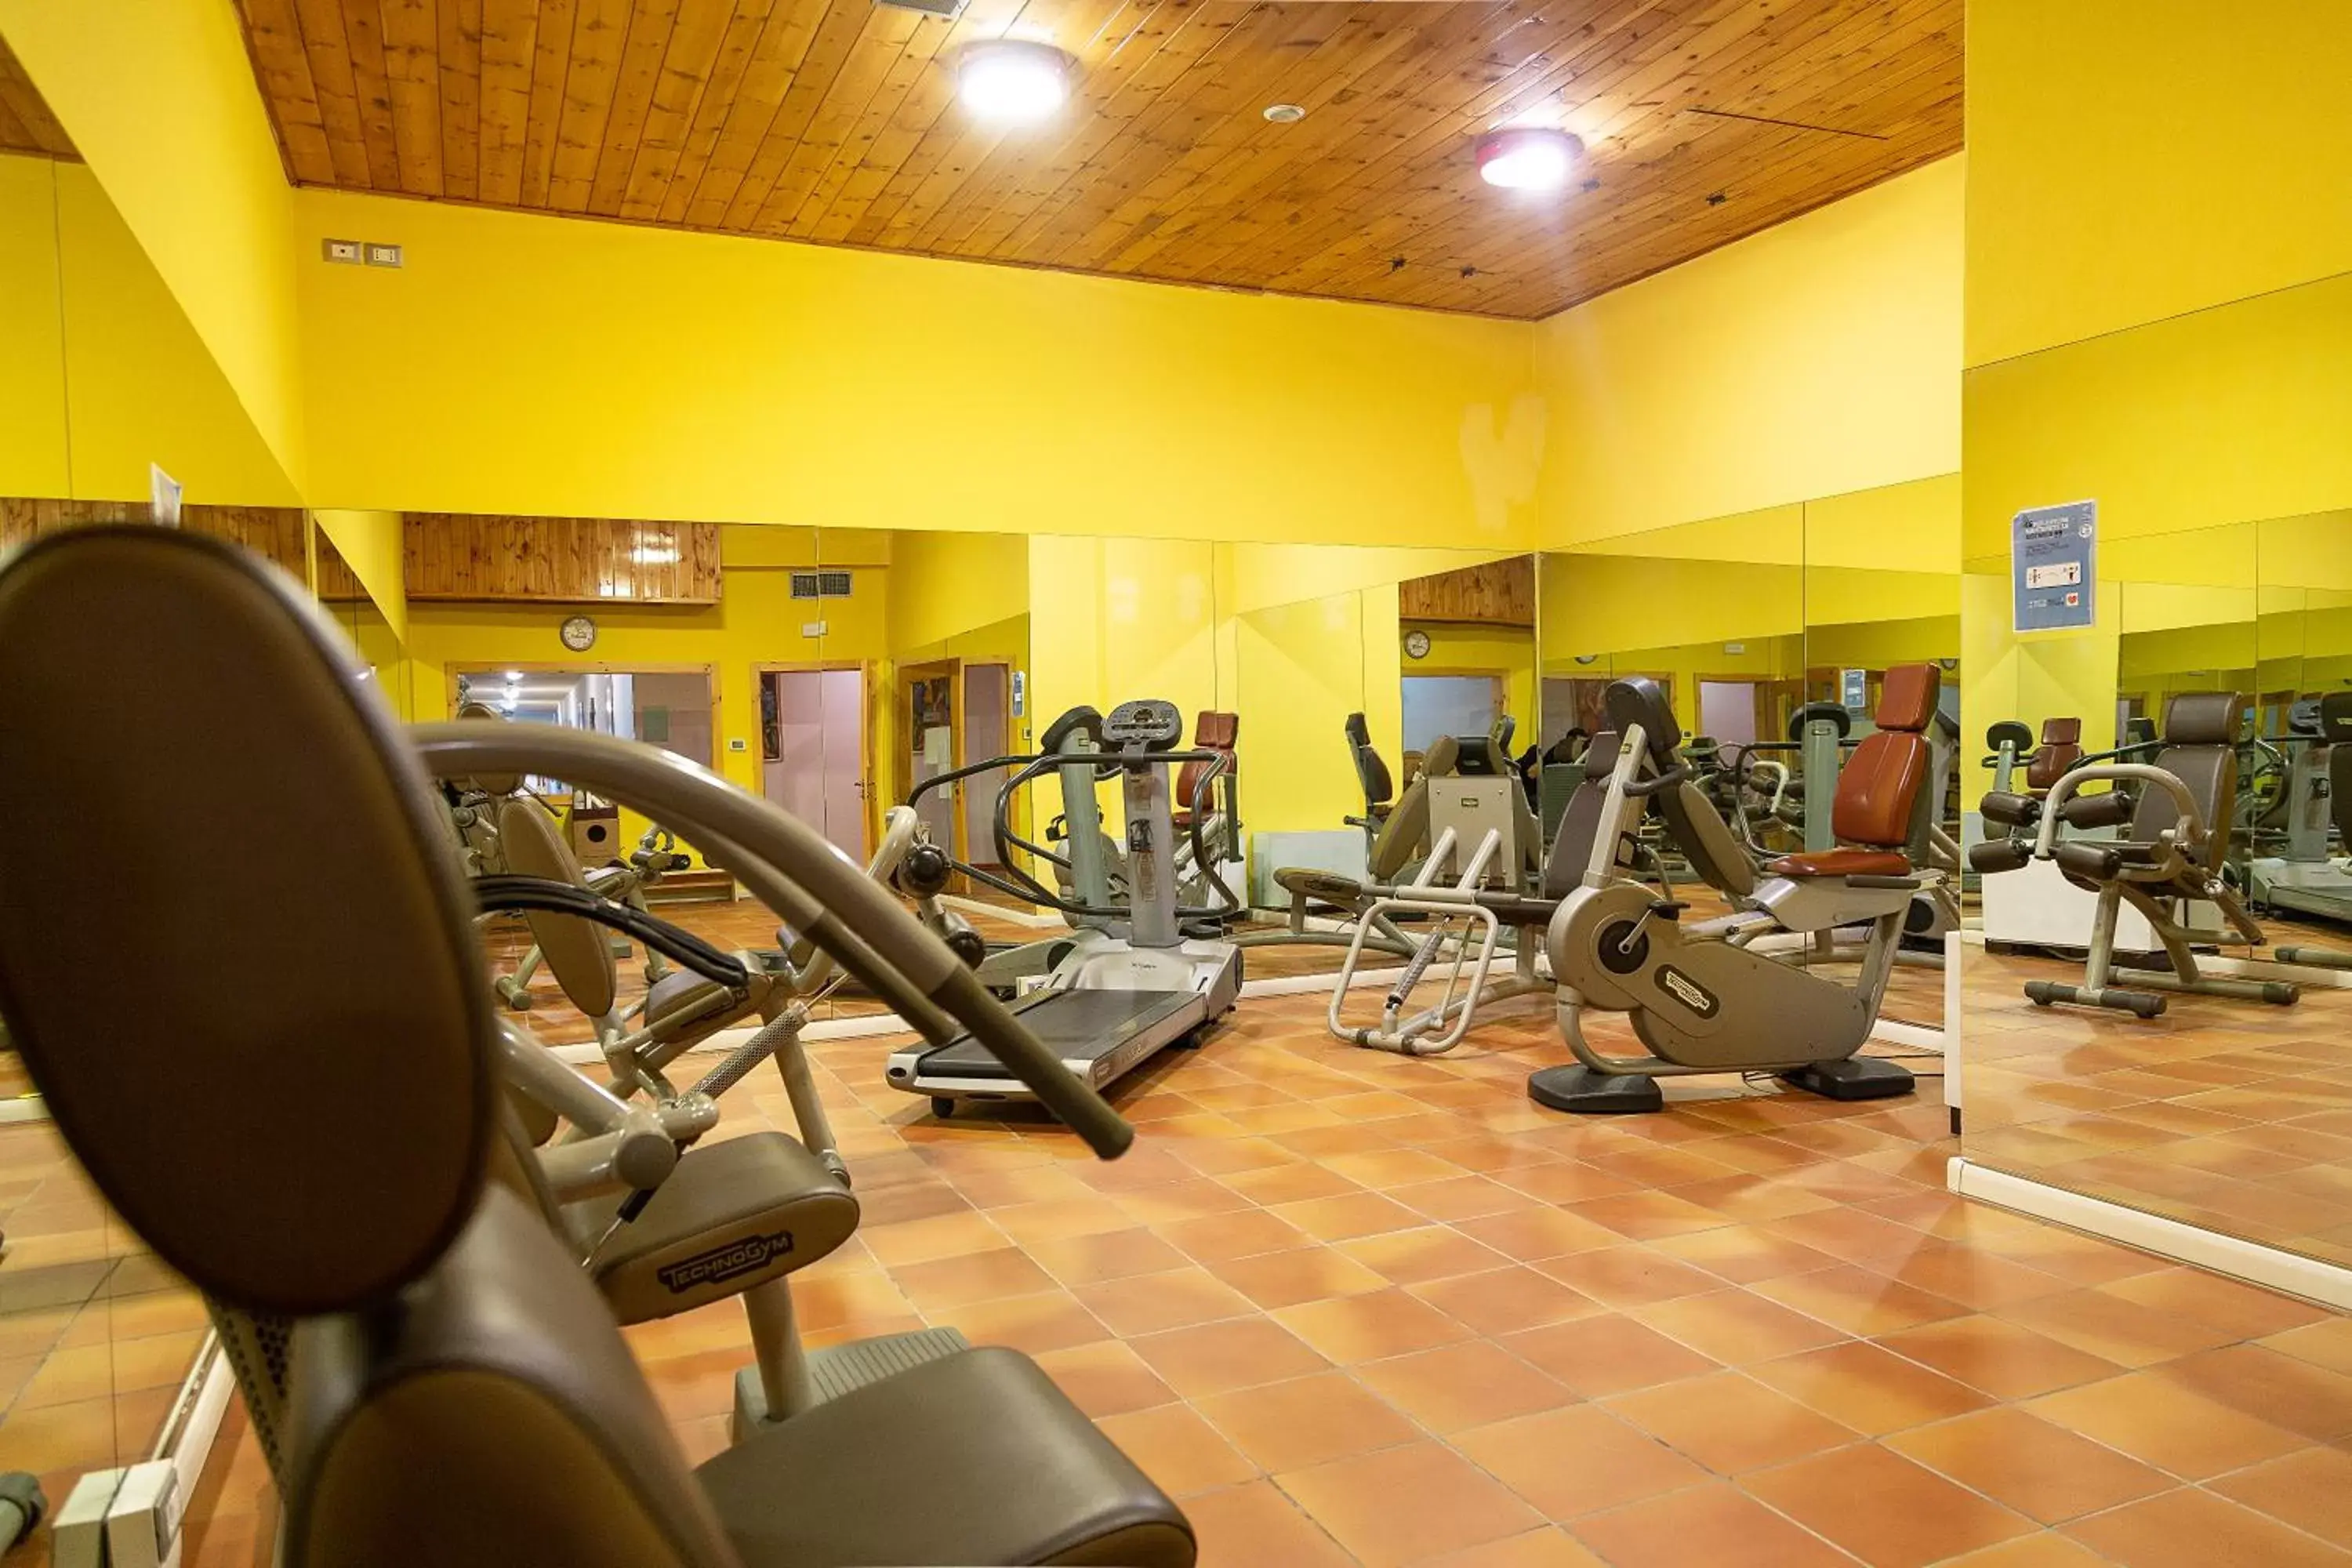 Fitness centre/facilities, Fitness Center/Facilities in Hotel Villaggio Nevada